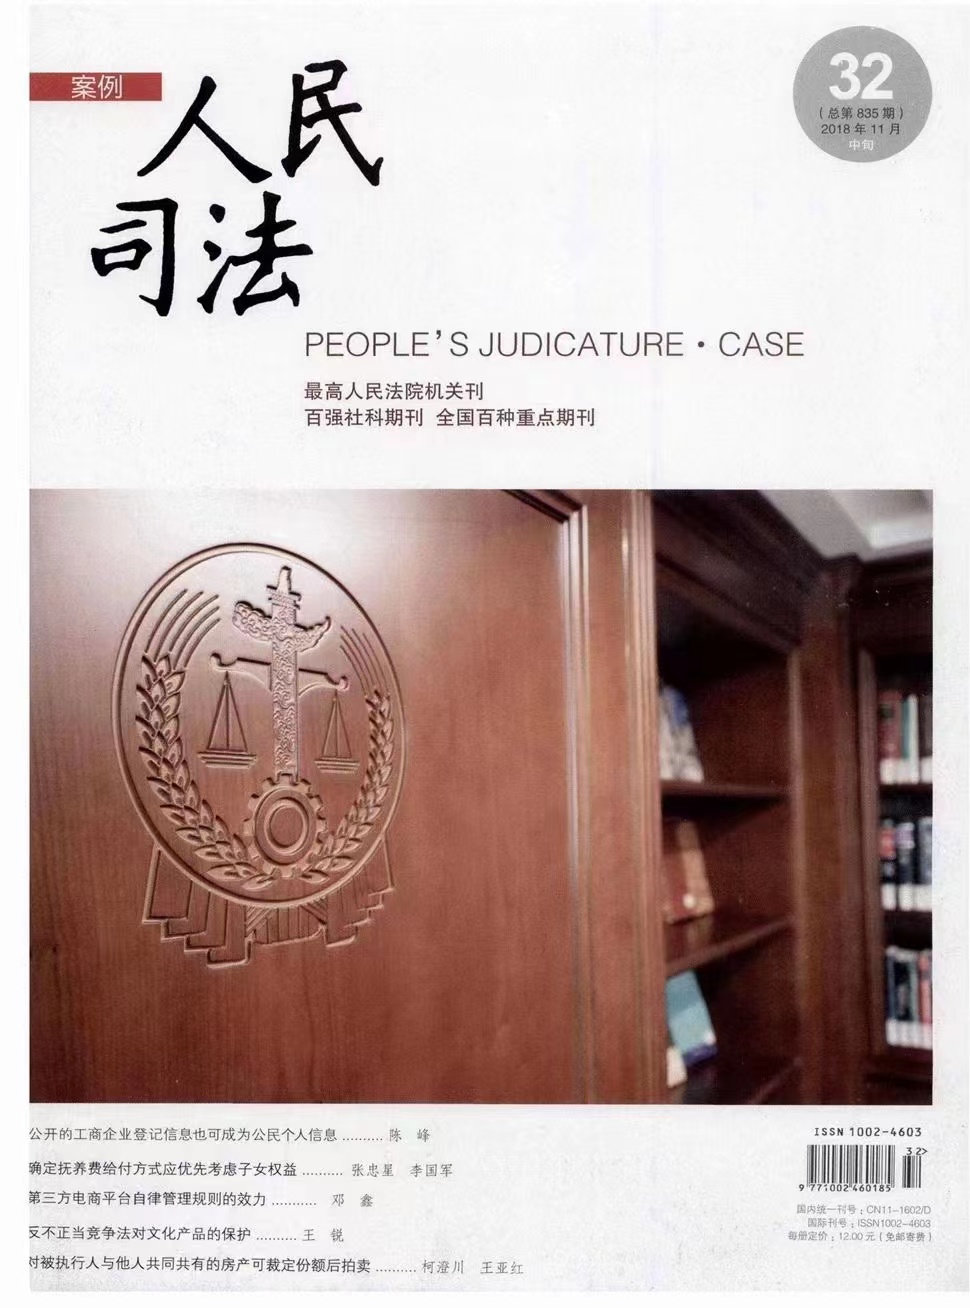 【法律】【PDF】225 法律杂志_人民司法应用22年